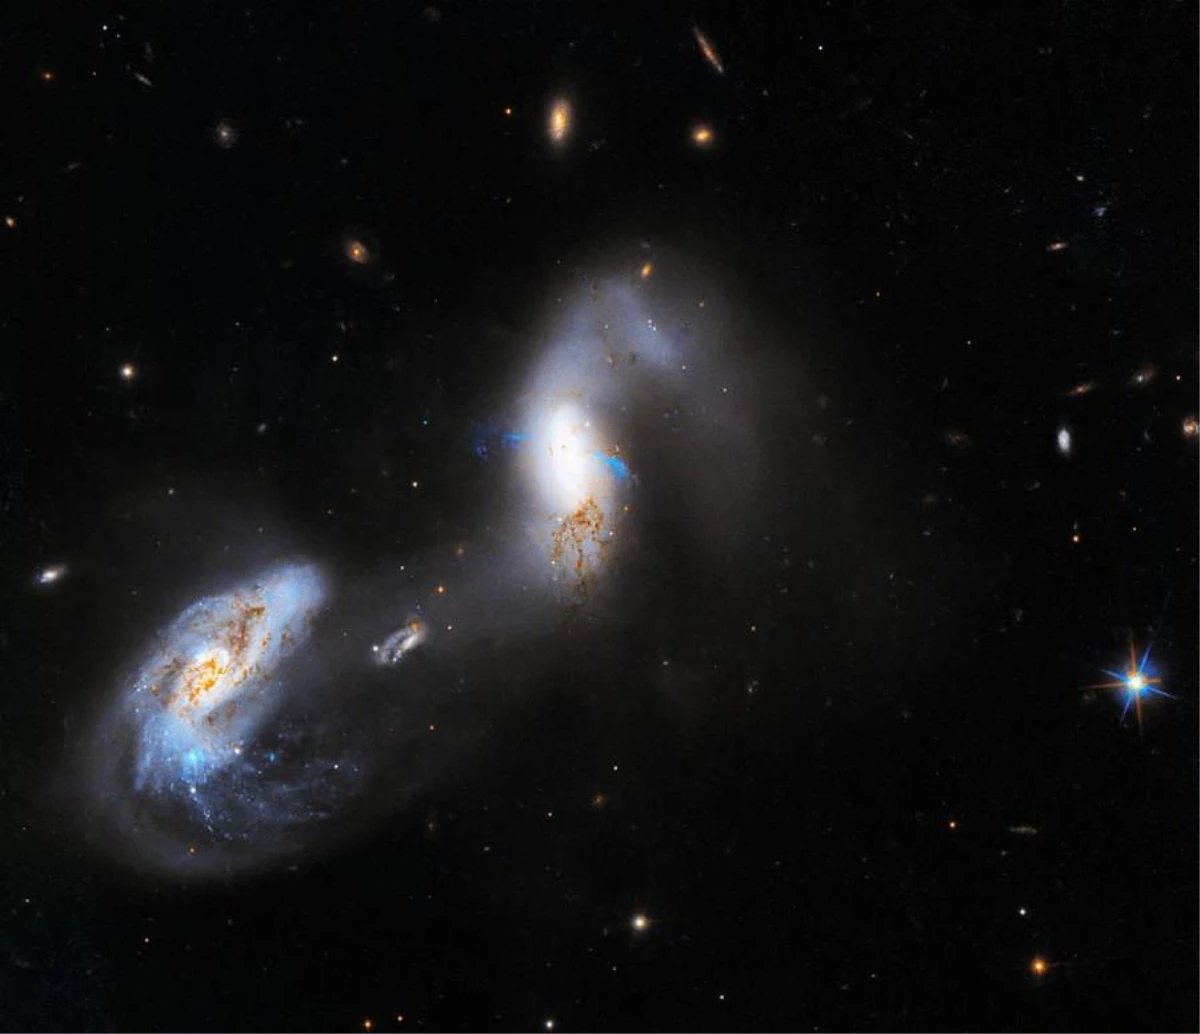 Nasanın Hubble Uzay Teleskobu İnanılmaz Parlak Galaksileri Fotoğrafladı